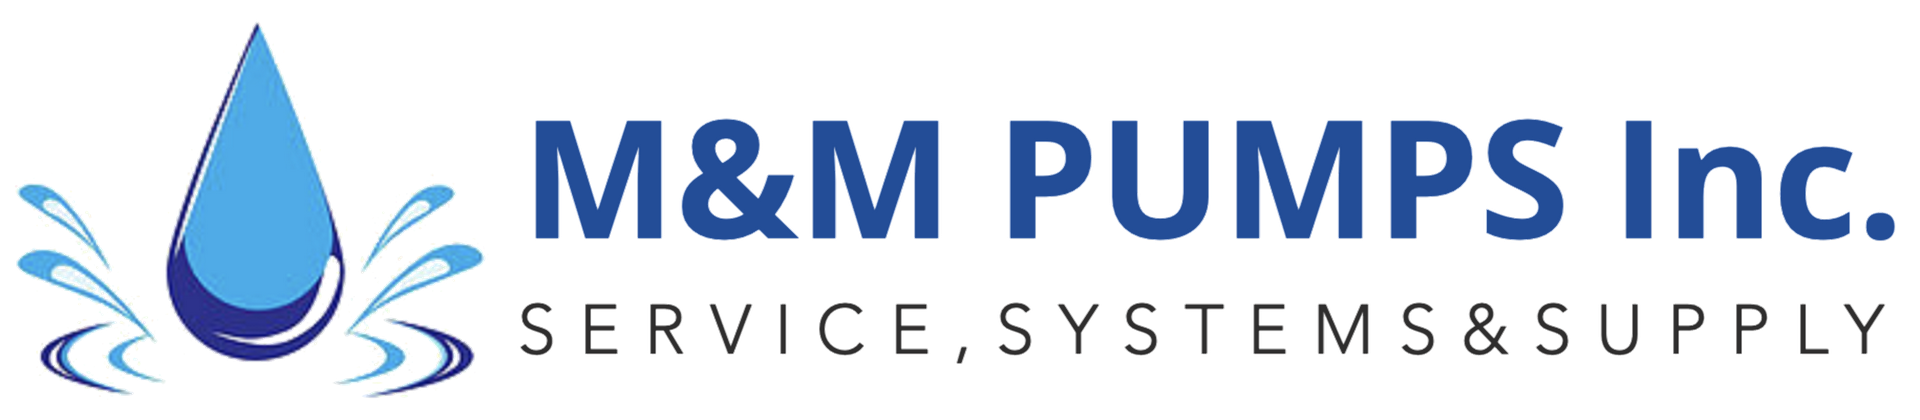 M&M Pumps Inc.